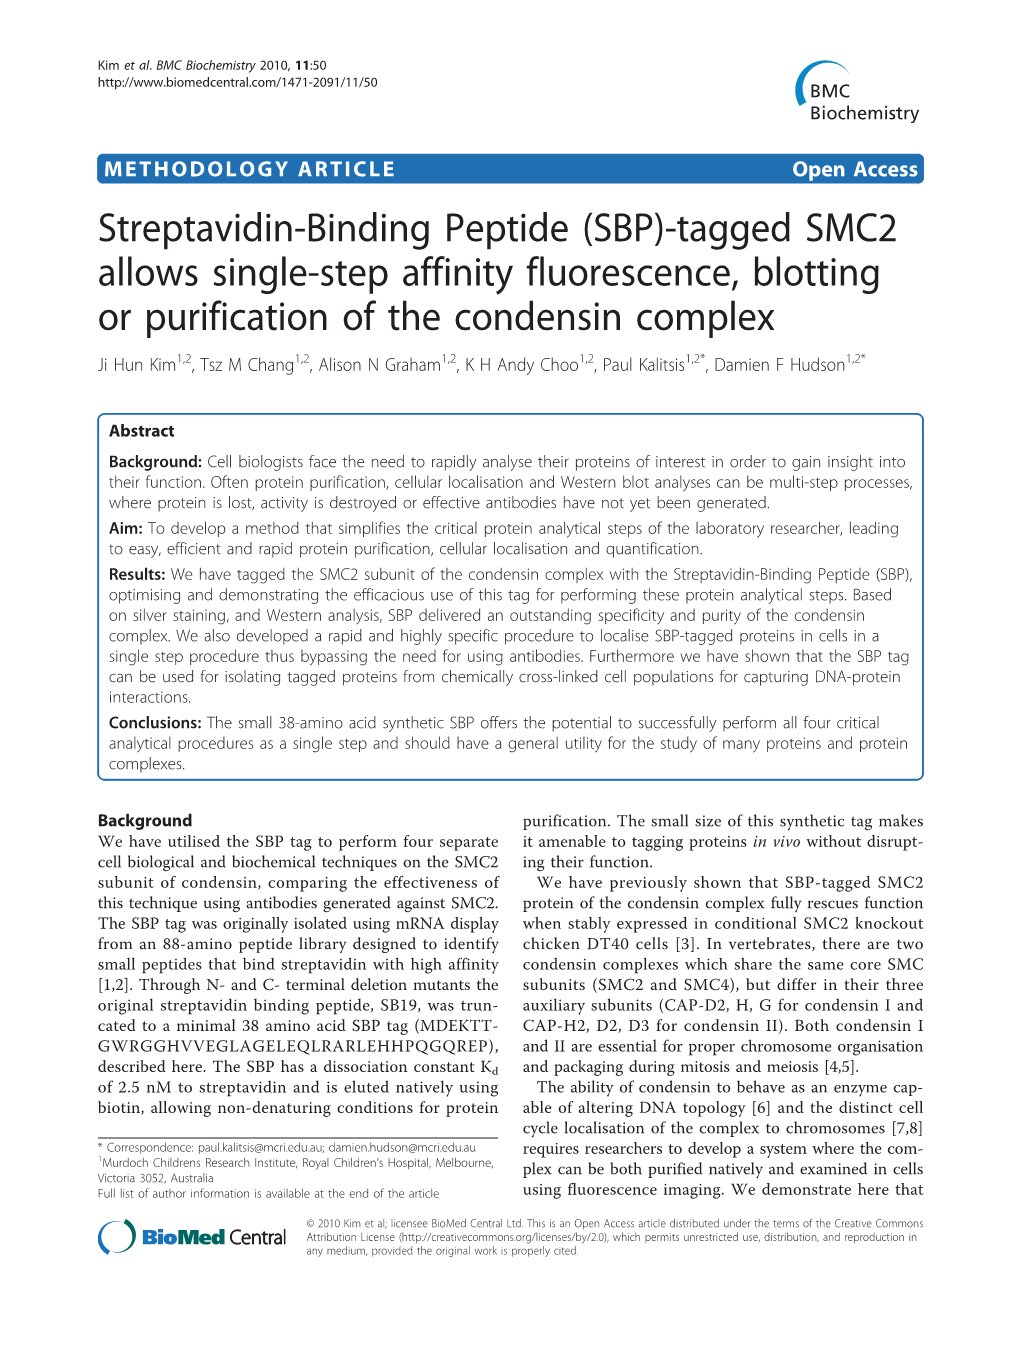 Streptavidin-Binding Peptide (SBP)-Tagged SMC2 Allows Single